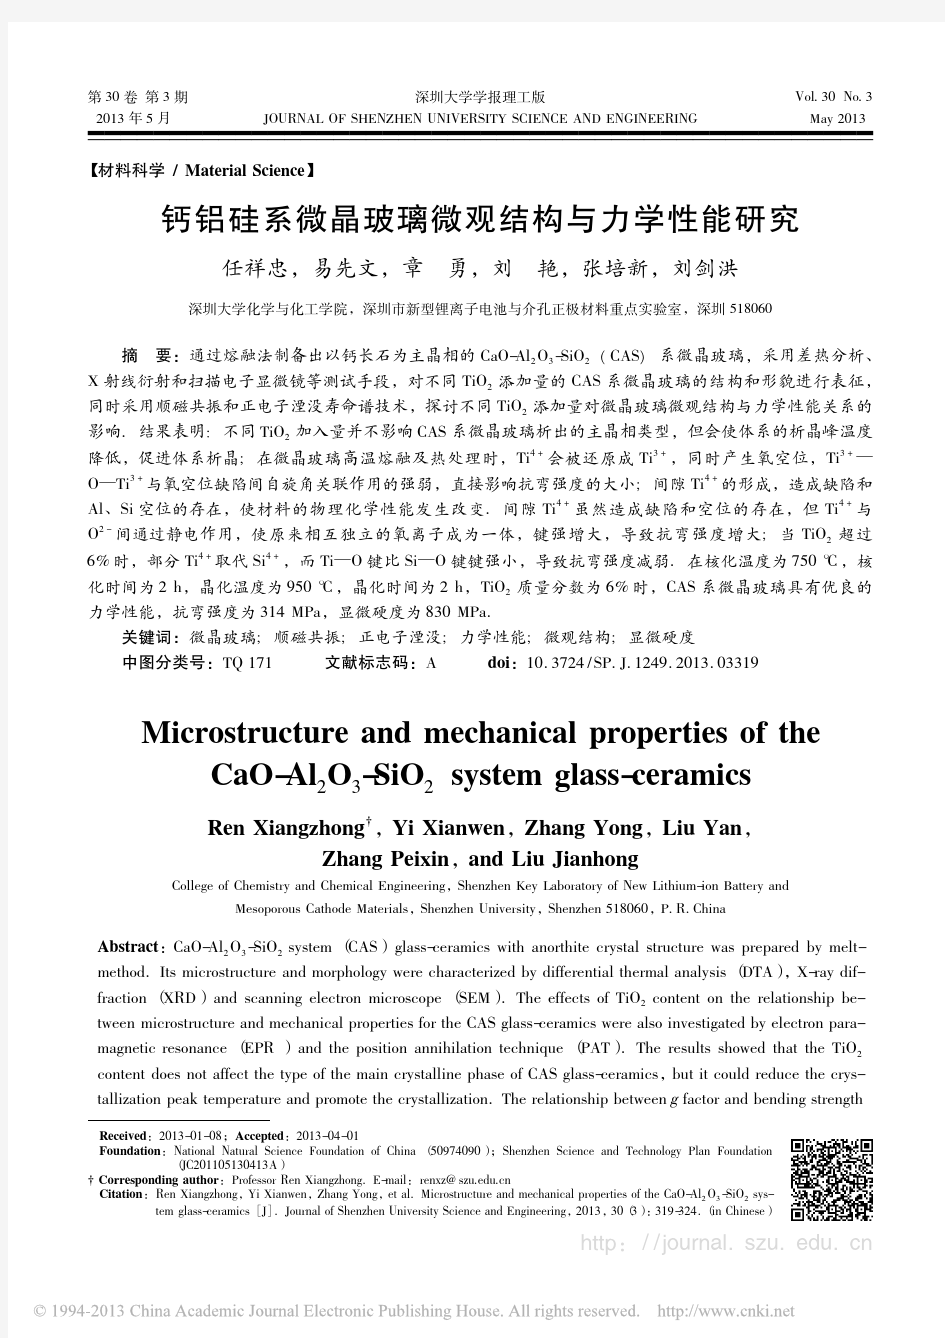 钙铝硅系微晶玻璃微观结构与力学性能研究_任祥忠